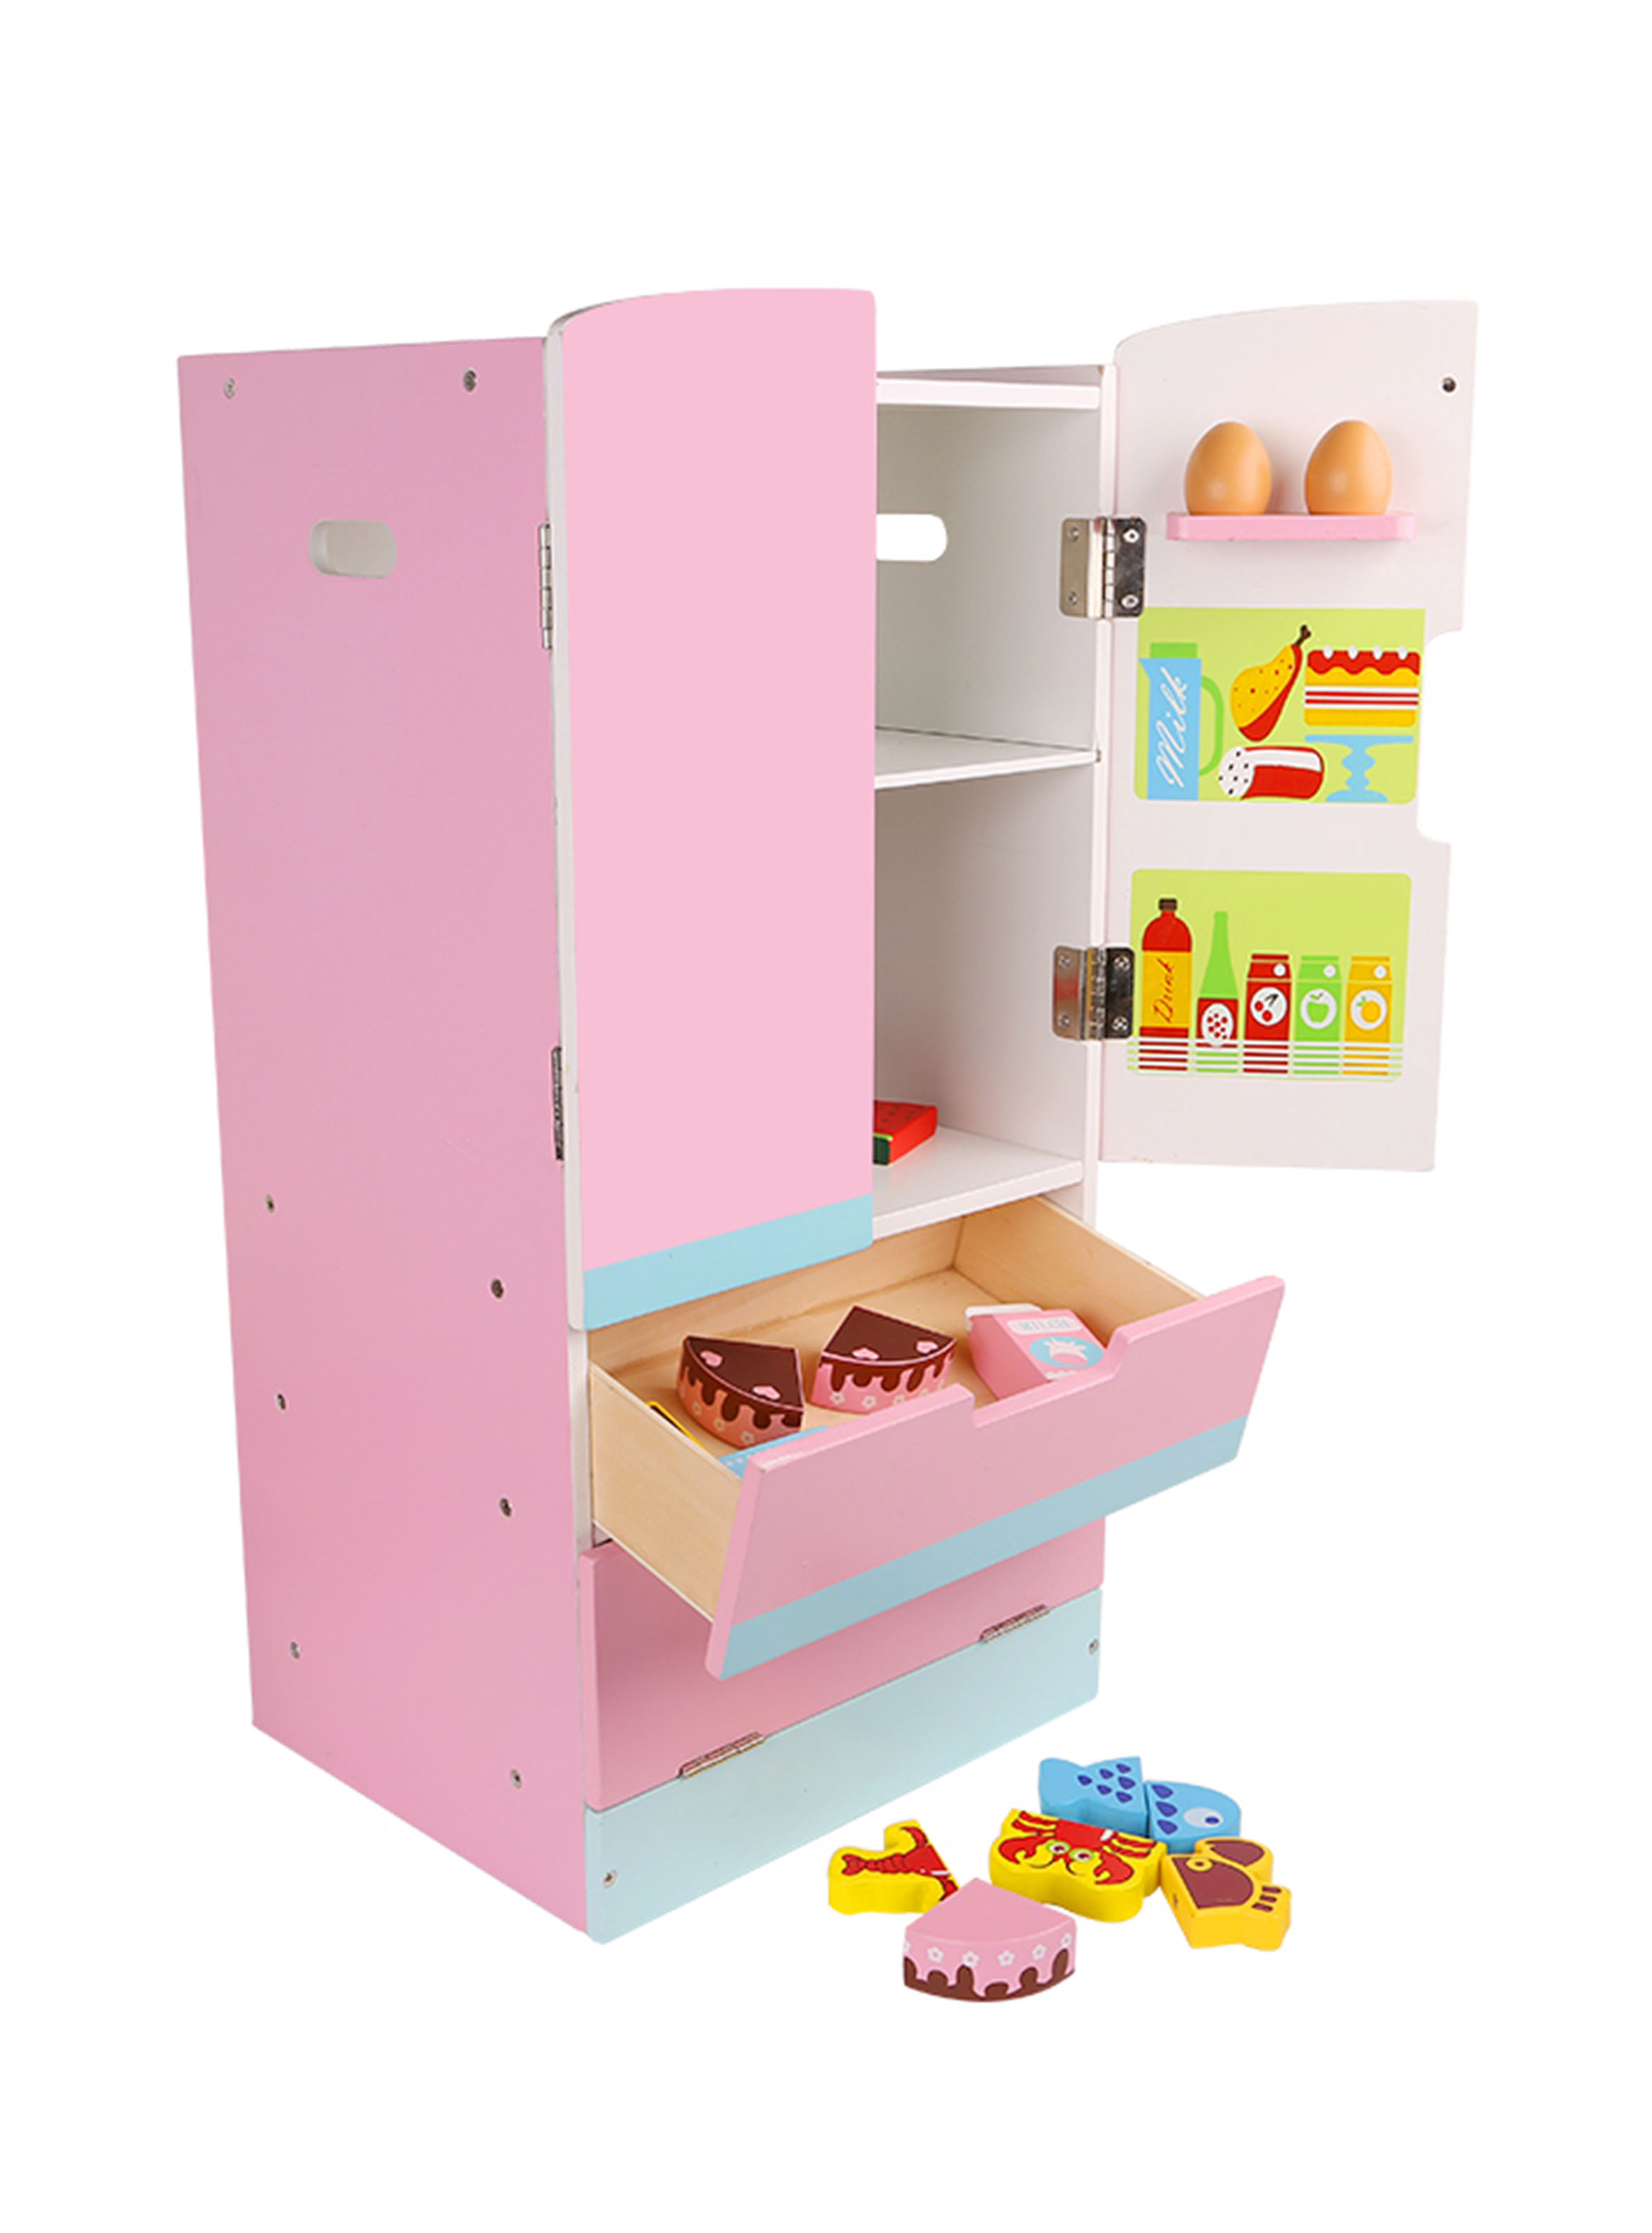 Juguete Kidscool Mini Hogar Refrigerador Side By Side